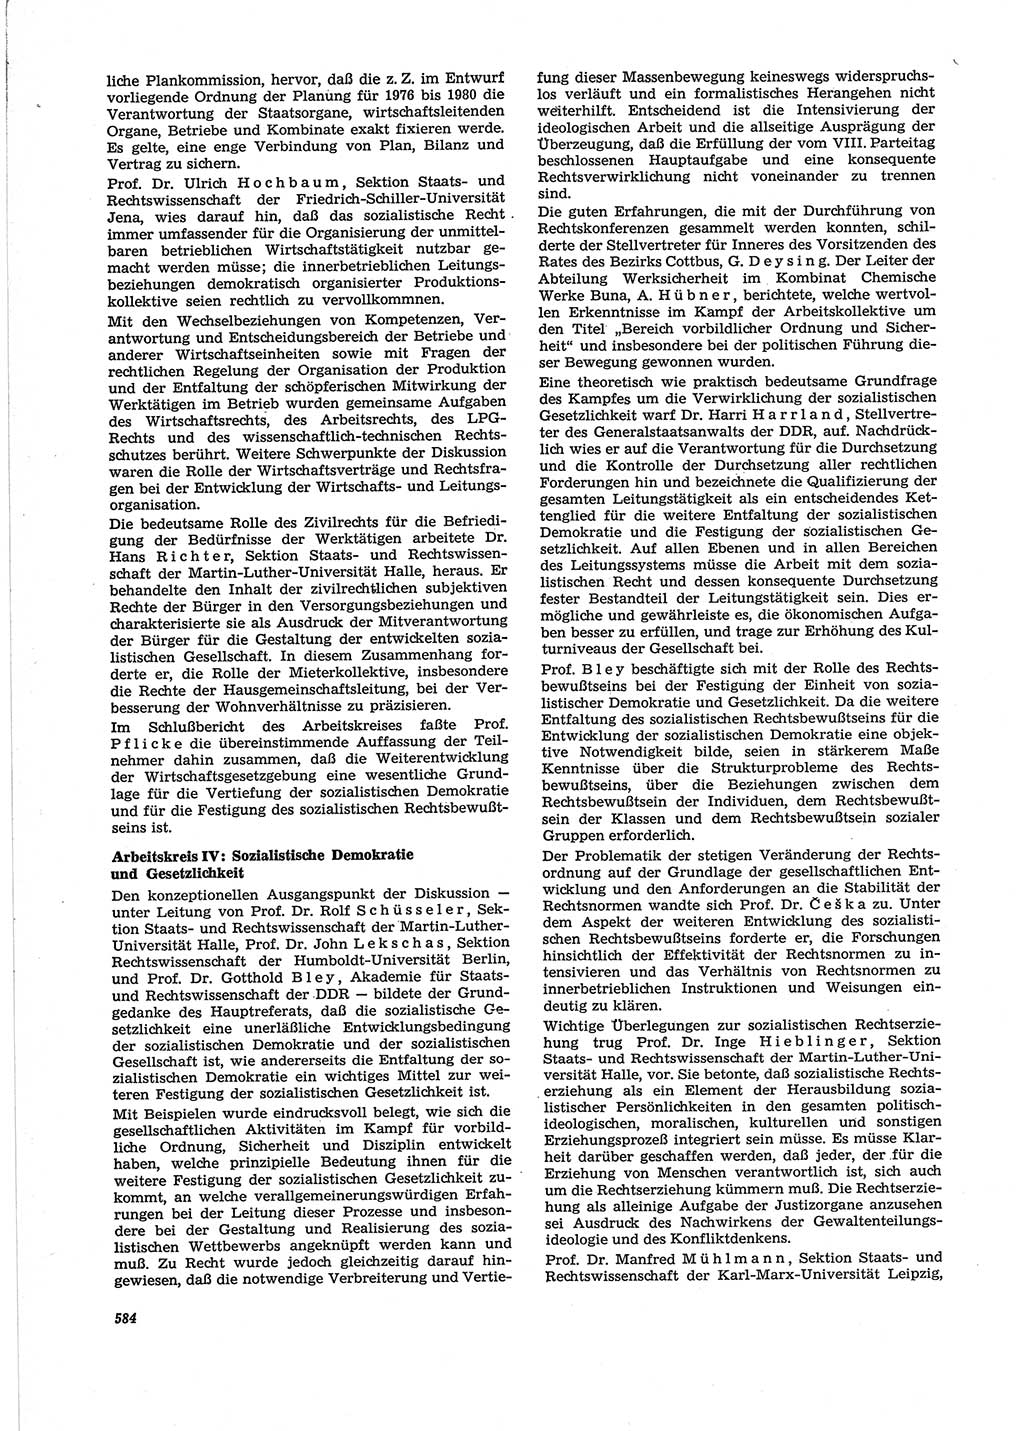 Neue Justiz (NJ), Zeitschrift für Recht und Rechtswissenschaft [Deutsche Demokratische Republik (DDR)], 28. Jahrgang 1974, Seite 584 (NJ DDR 1974, S. 584)